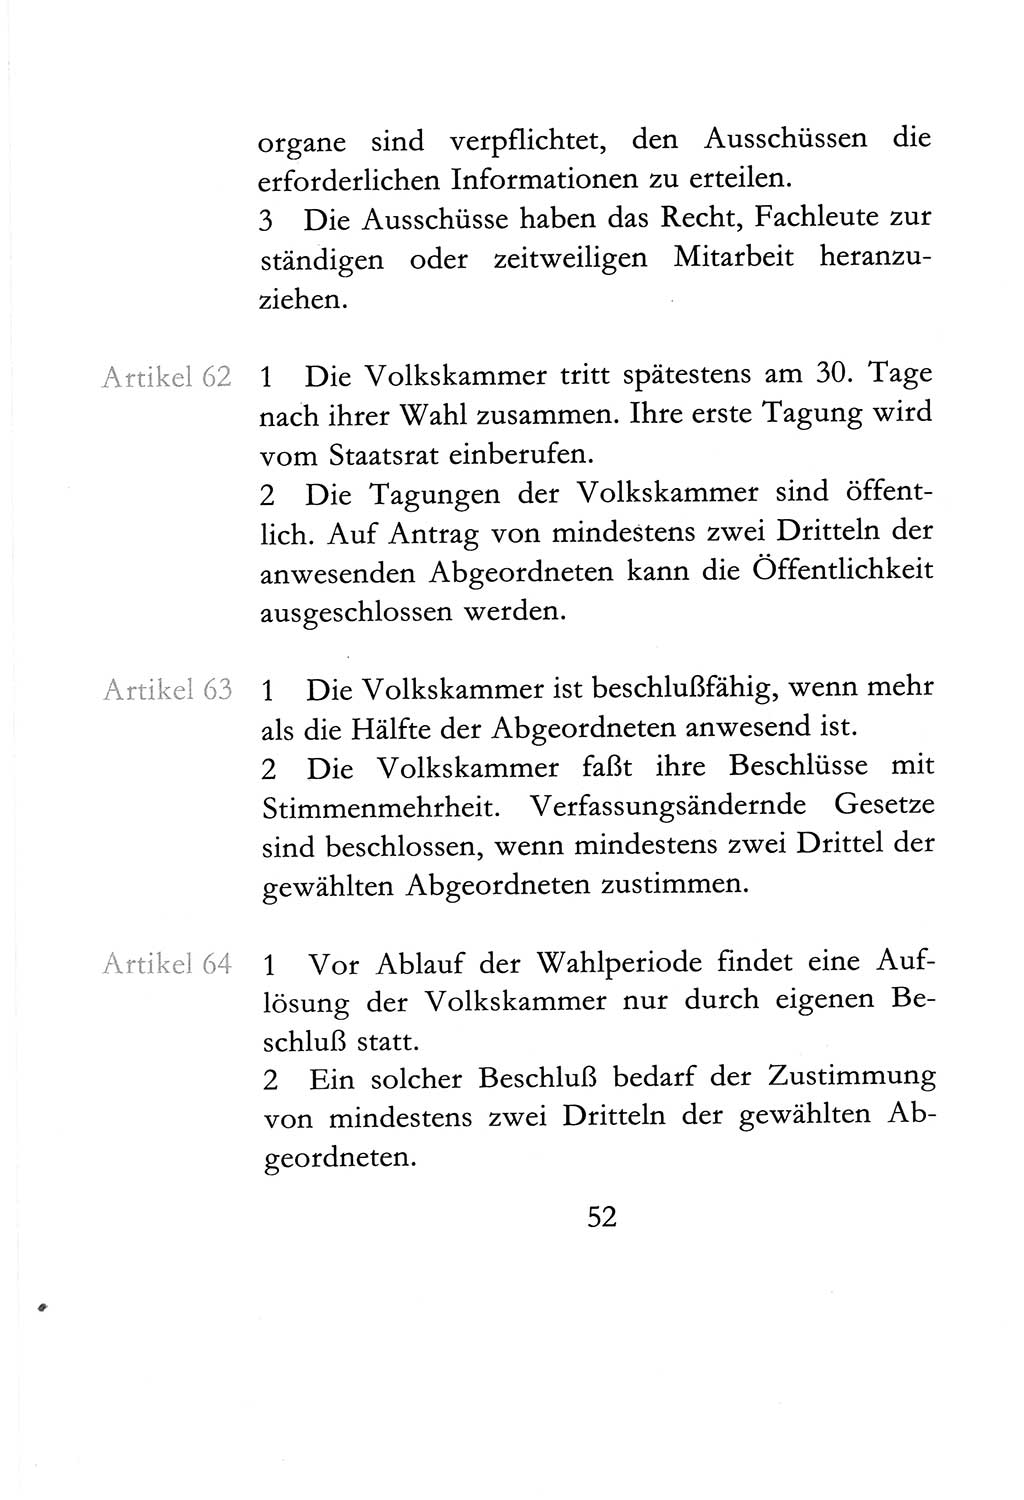 Verfassung der Deutschen Demokratischen Republik (DDR) vom 6. April 1968, Seite 52 (Verf. DDR 1968, S. 52)